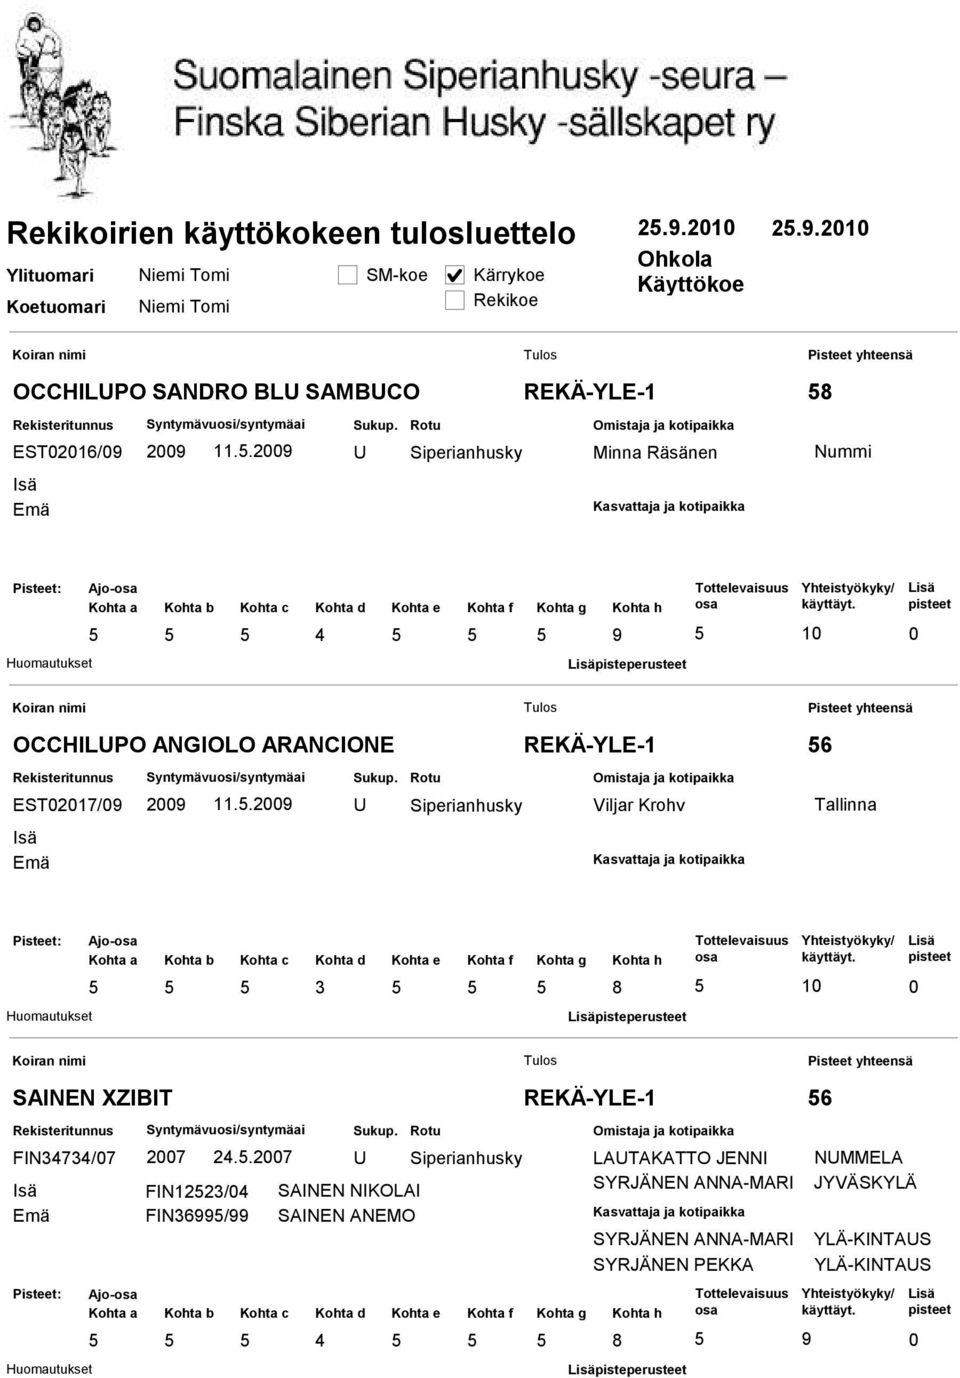 . REKÄ-YLE- Viljar Krohv 6 Tallinna pisteperusteet SAIE XZIBIT FI7/7 7.